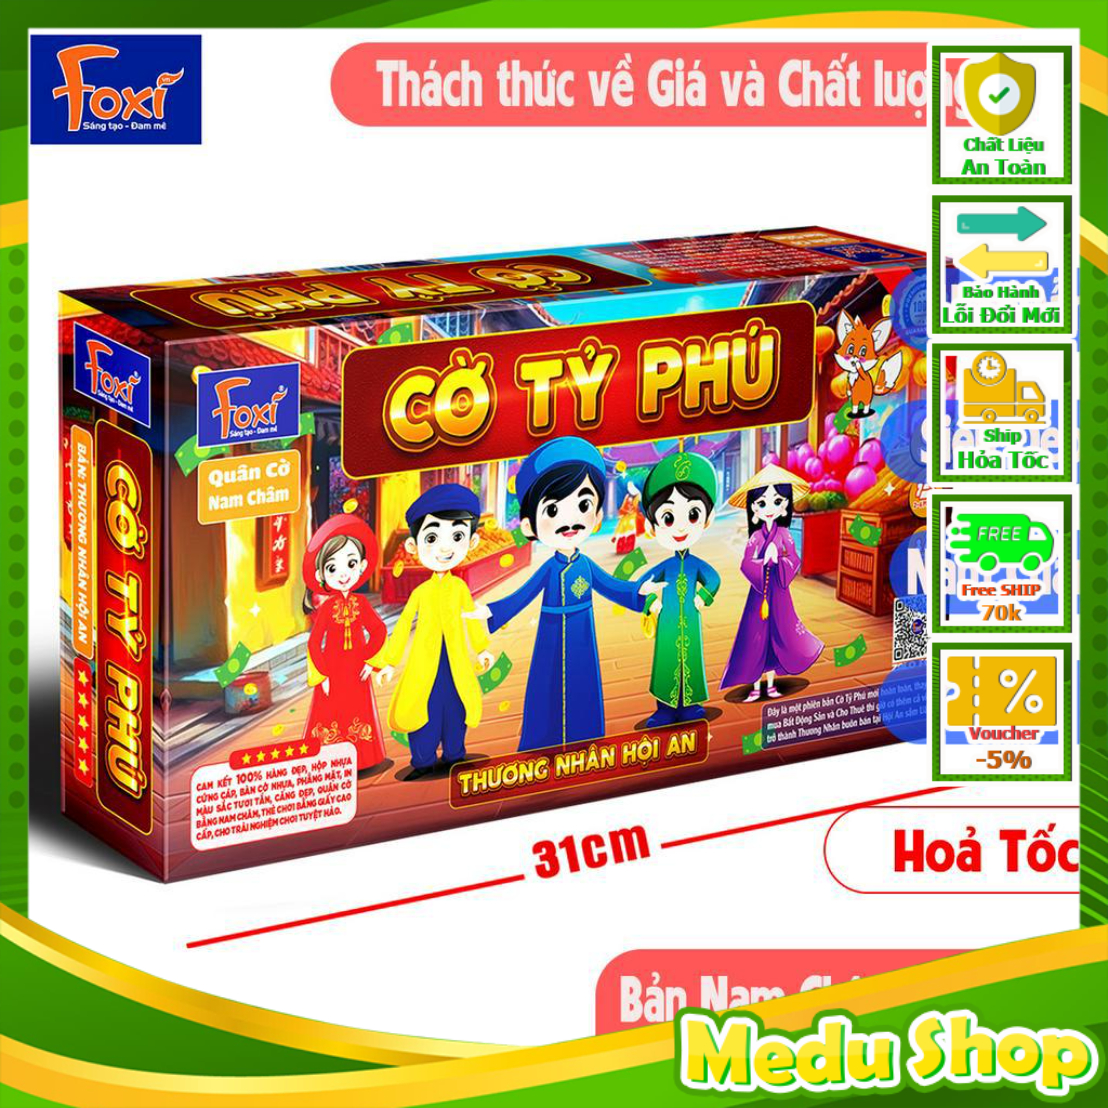 Cờ Tỷ Phú-tỉ phú Nam Châm Foxi-Monopoly-Thương nhân Hội An-SIZE TO 31cm